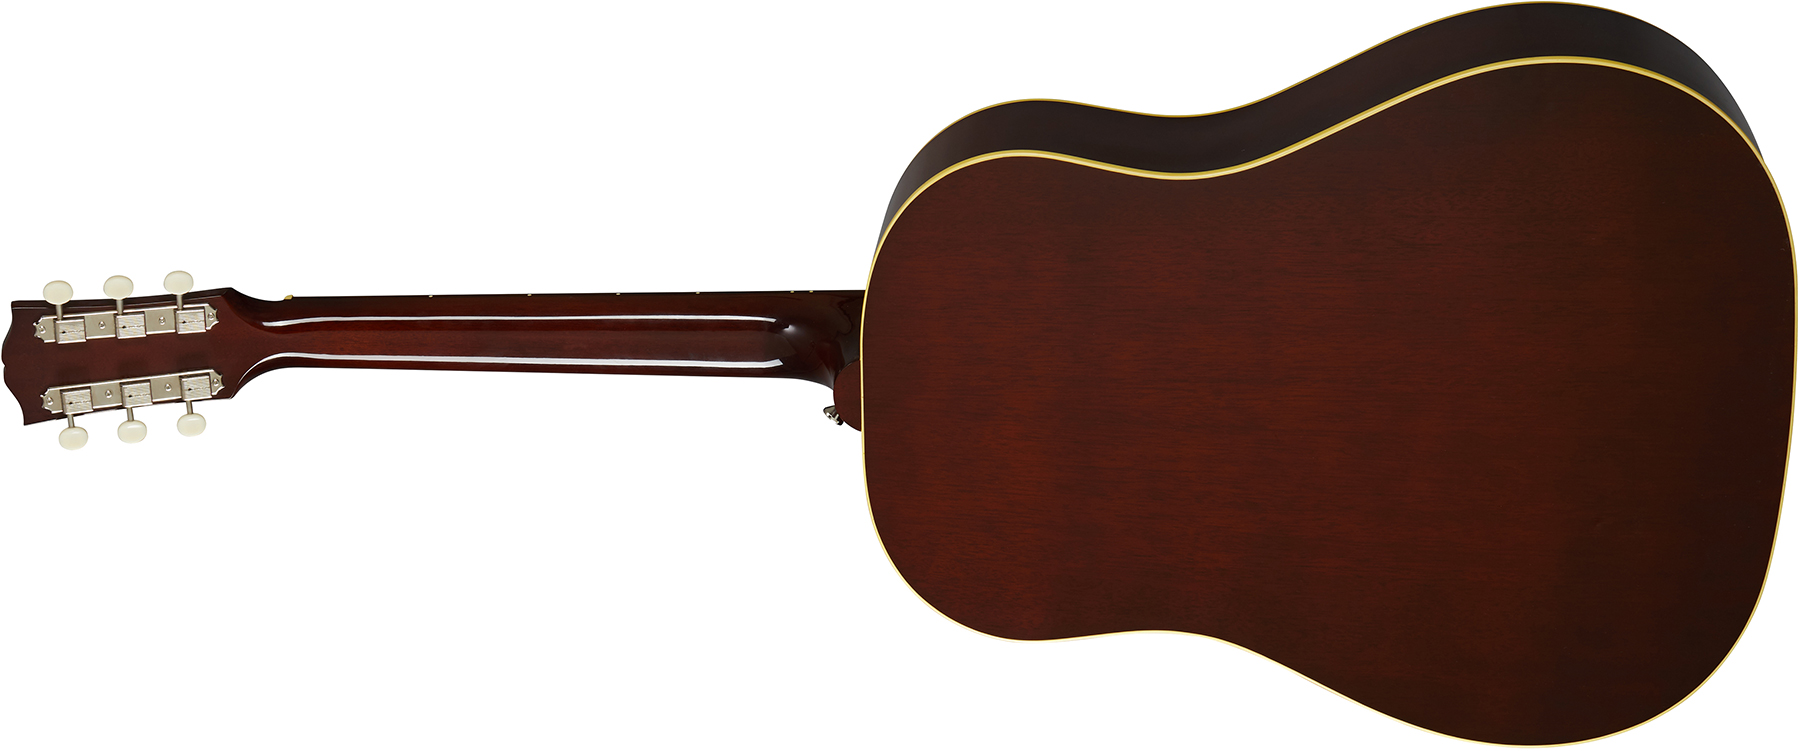 Gibson 60s J-50 Original 2020 Epicea Acajou Rw - Antique Natural - Guitare Acoustique - Variation 2